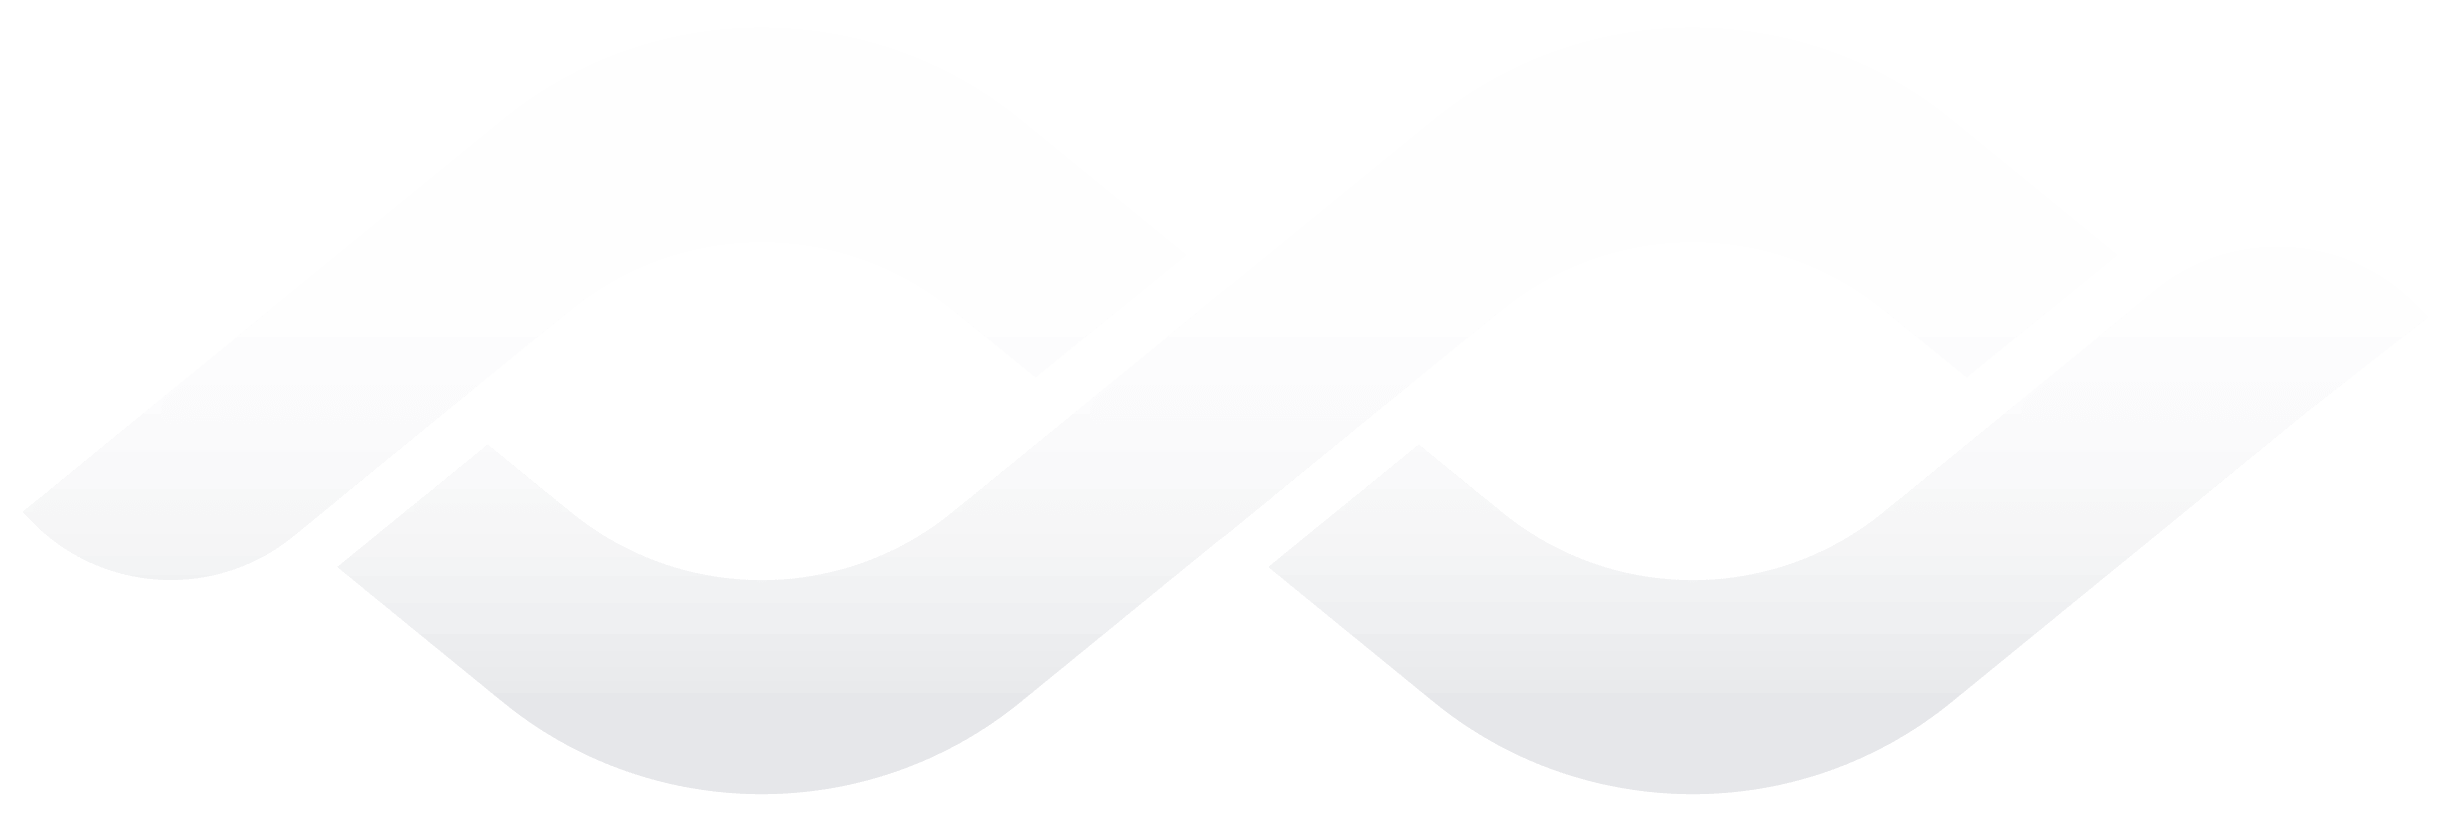 Octomated background logo